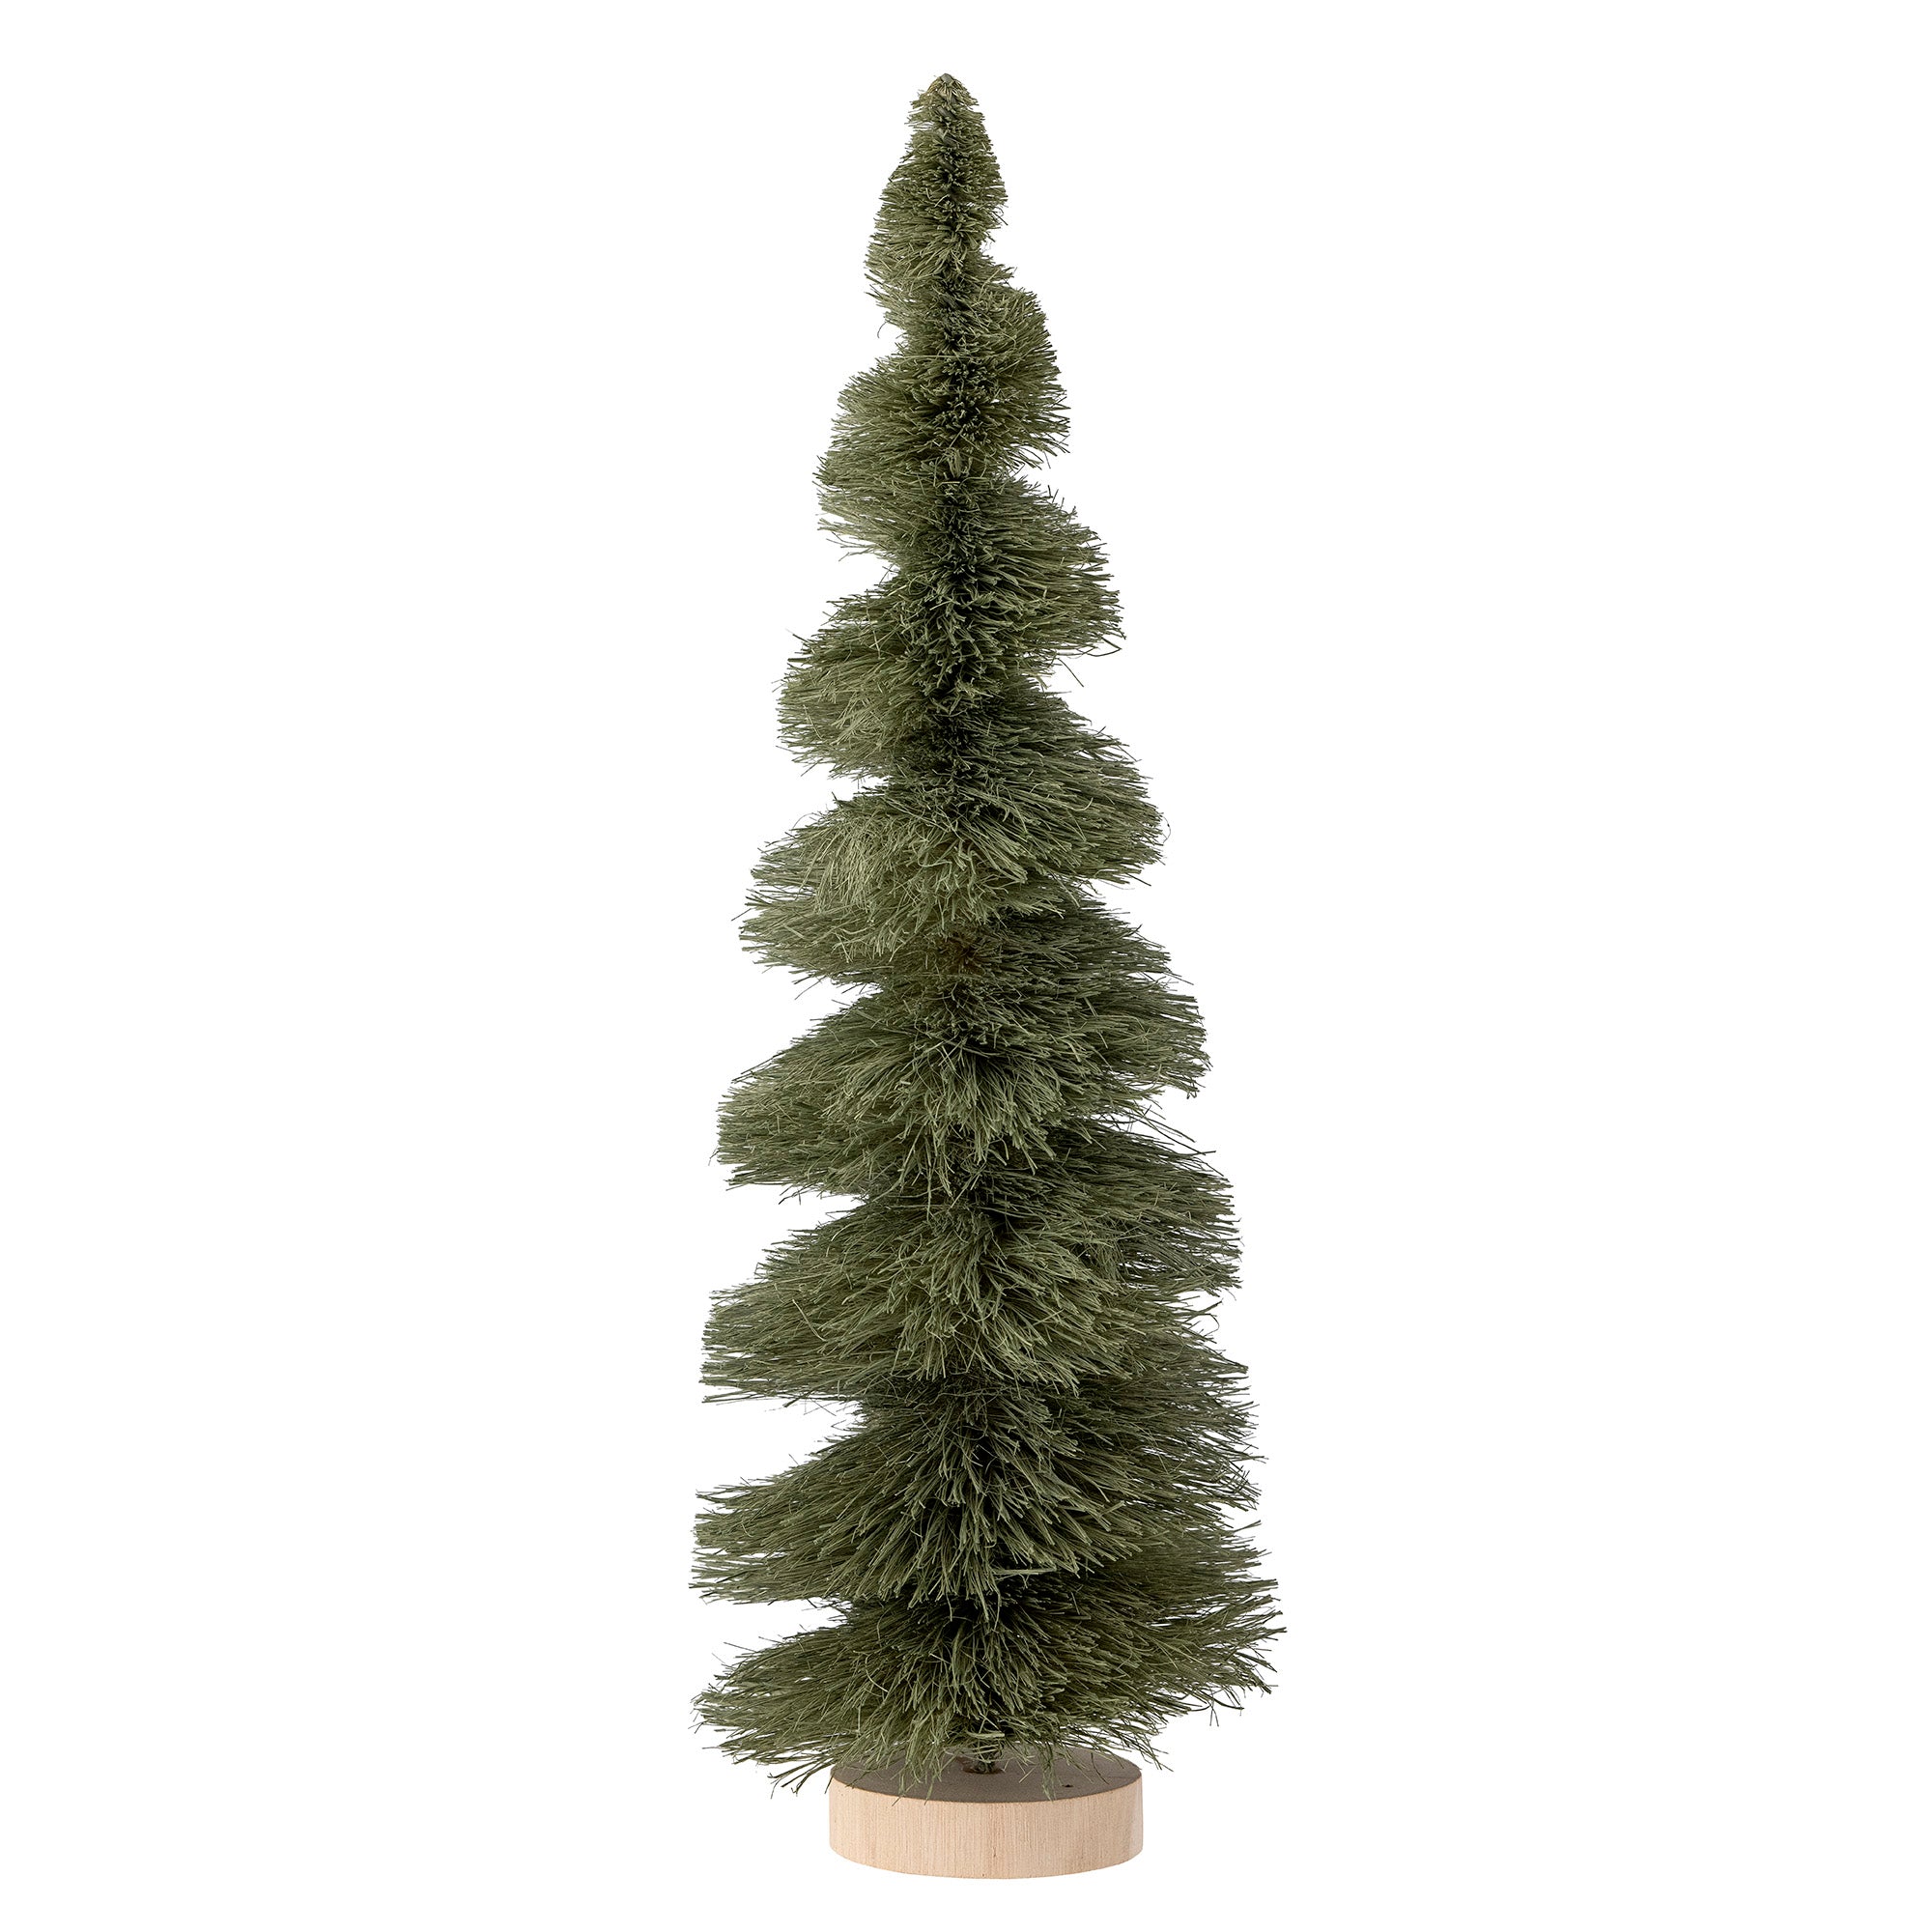 Weihnachtsbaum von Bloomingville, gedreht H38 cm